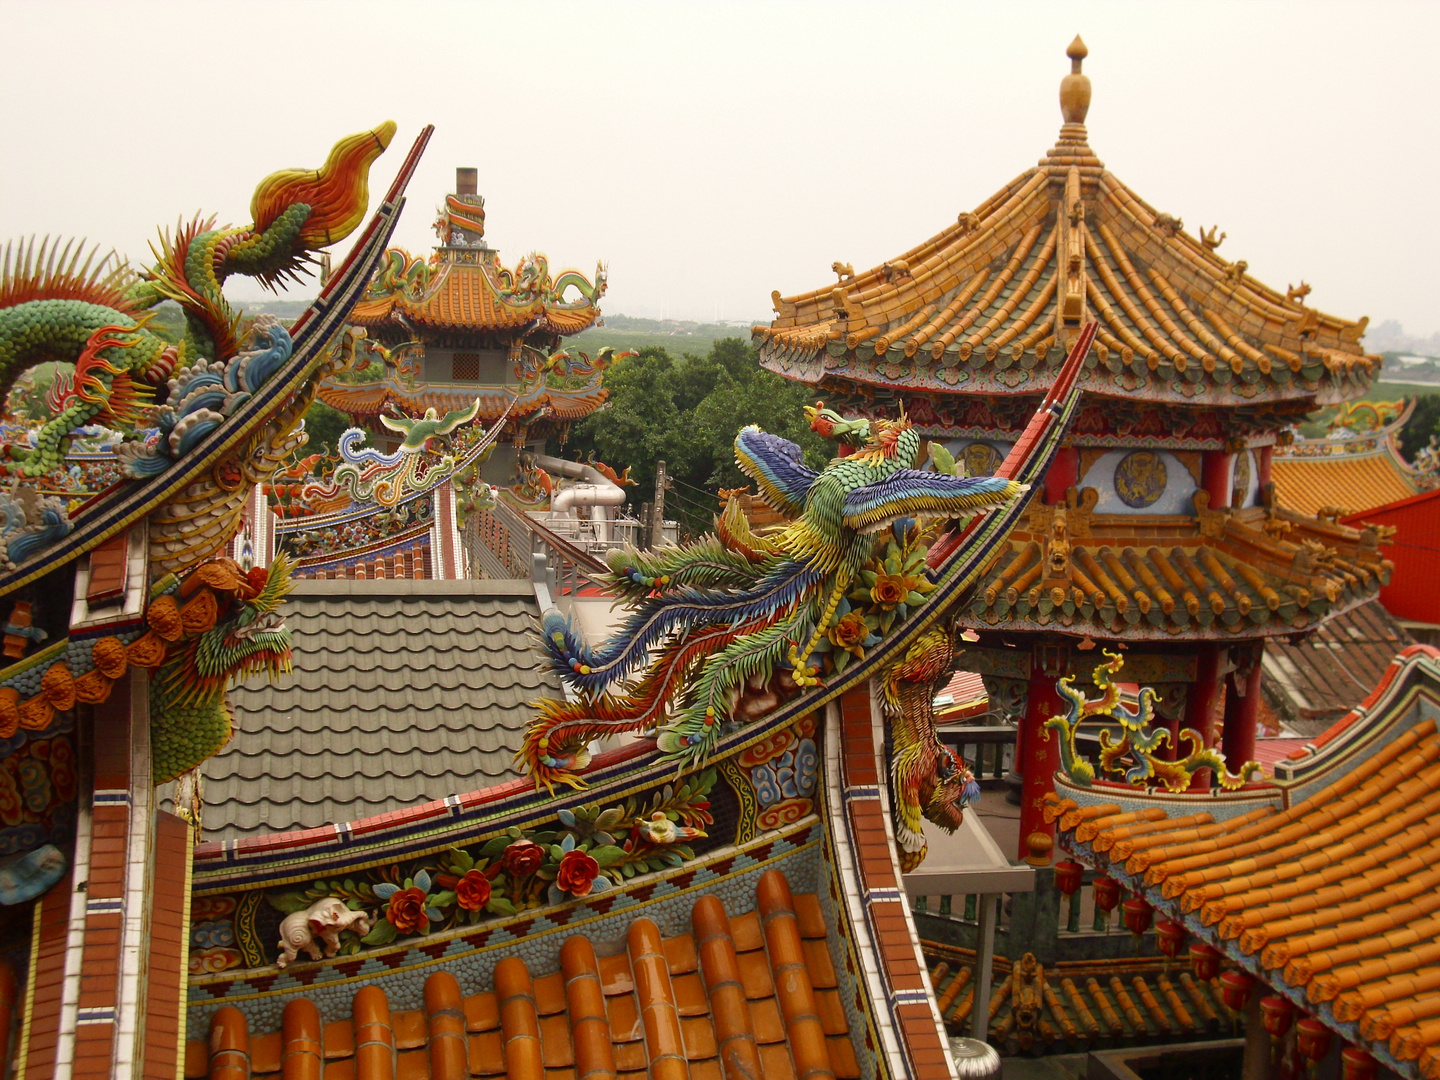 Guandu Temple in Danshui (Taiwan)